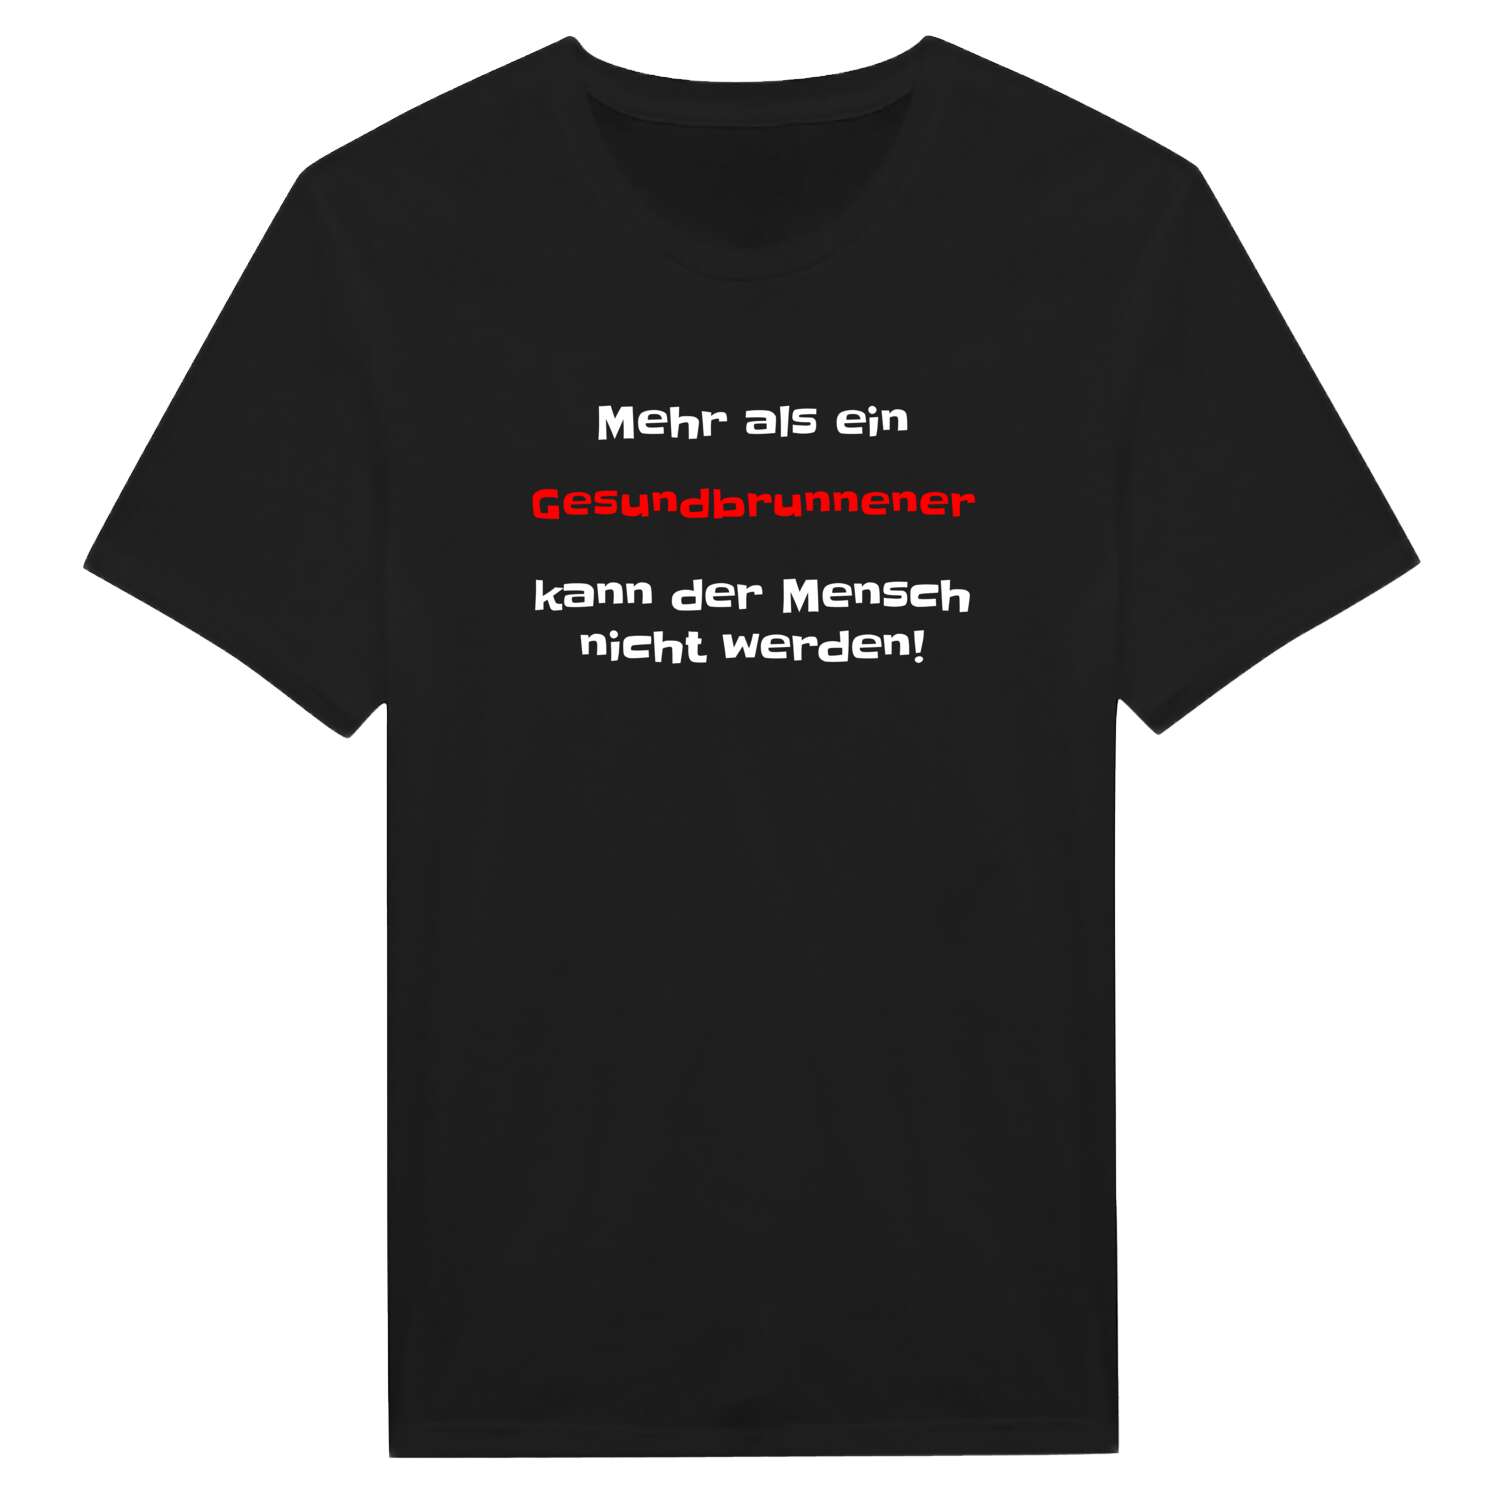 Gesundbrunnen T-Shirt »Mehr als ein«